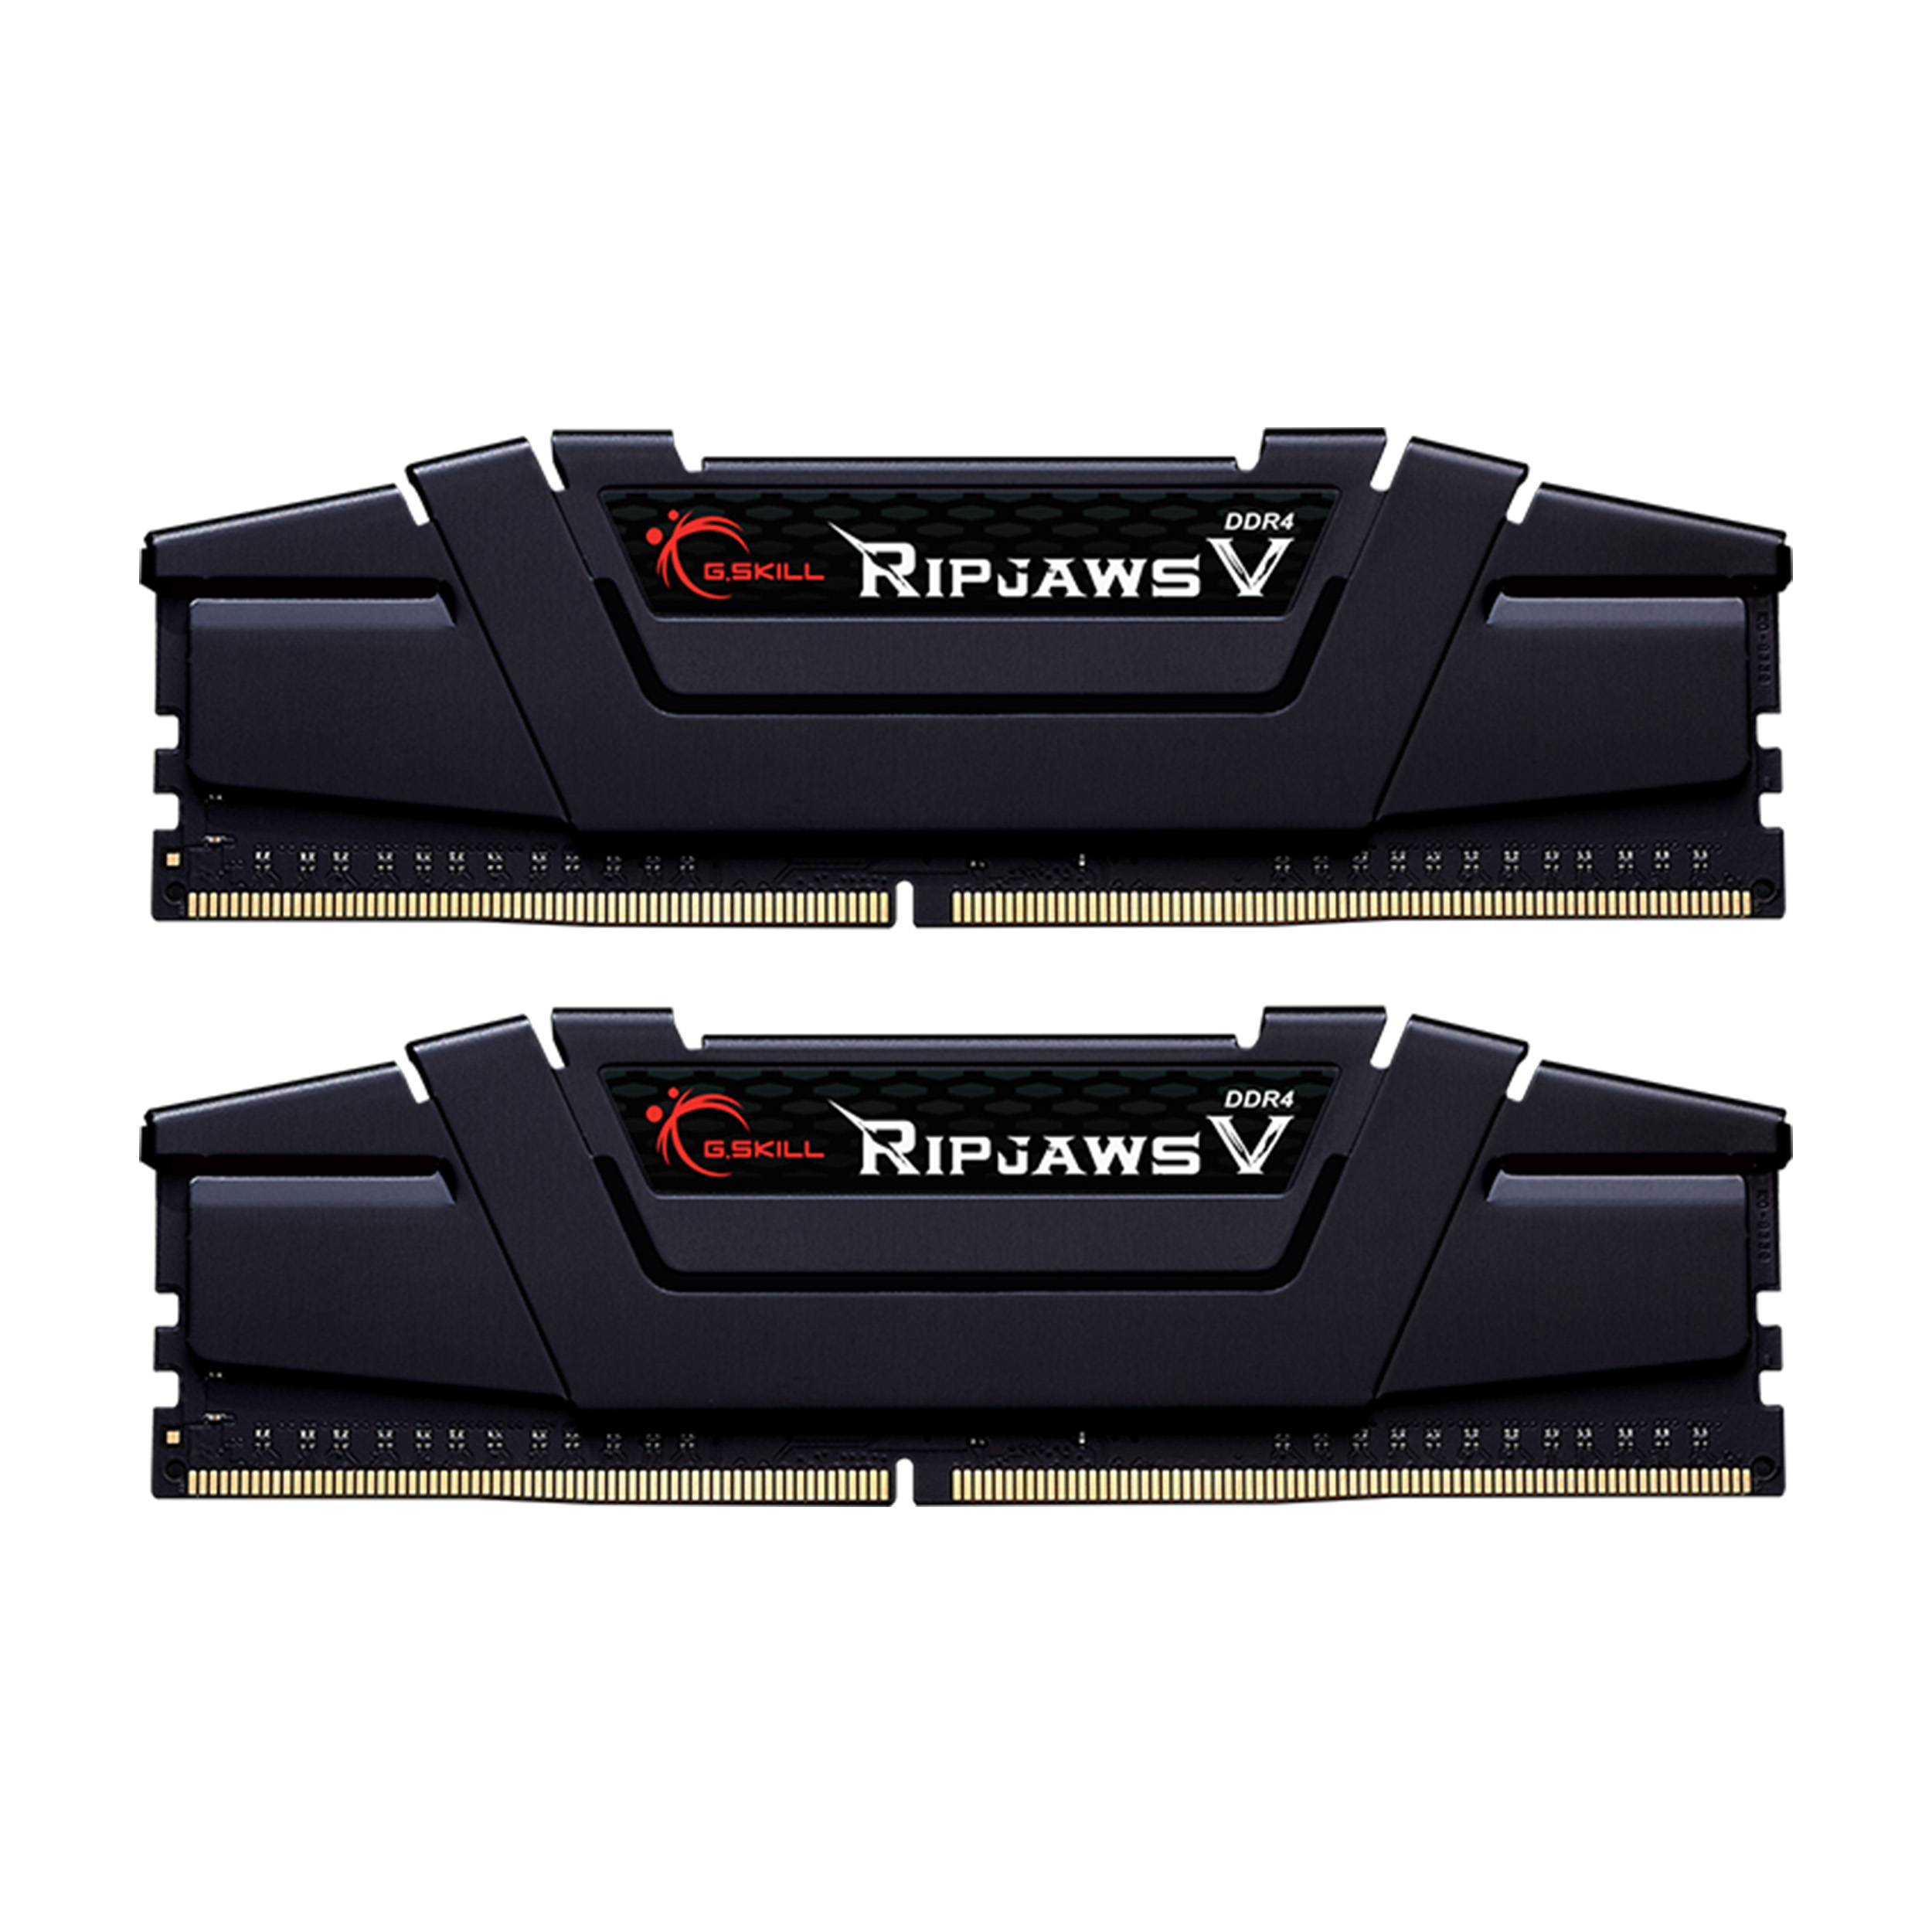 رم دسکتاپ DDR4 دو کاناله 4266 مگاهرتز CL19 جی اسکیل مدل RIPJAWS V ظرفیت 32 گیگابایت